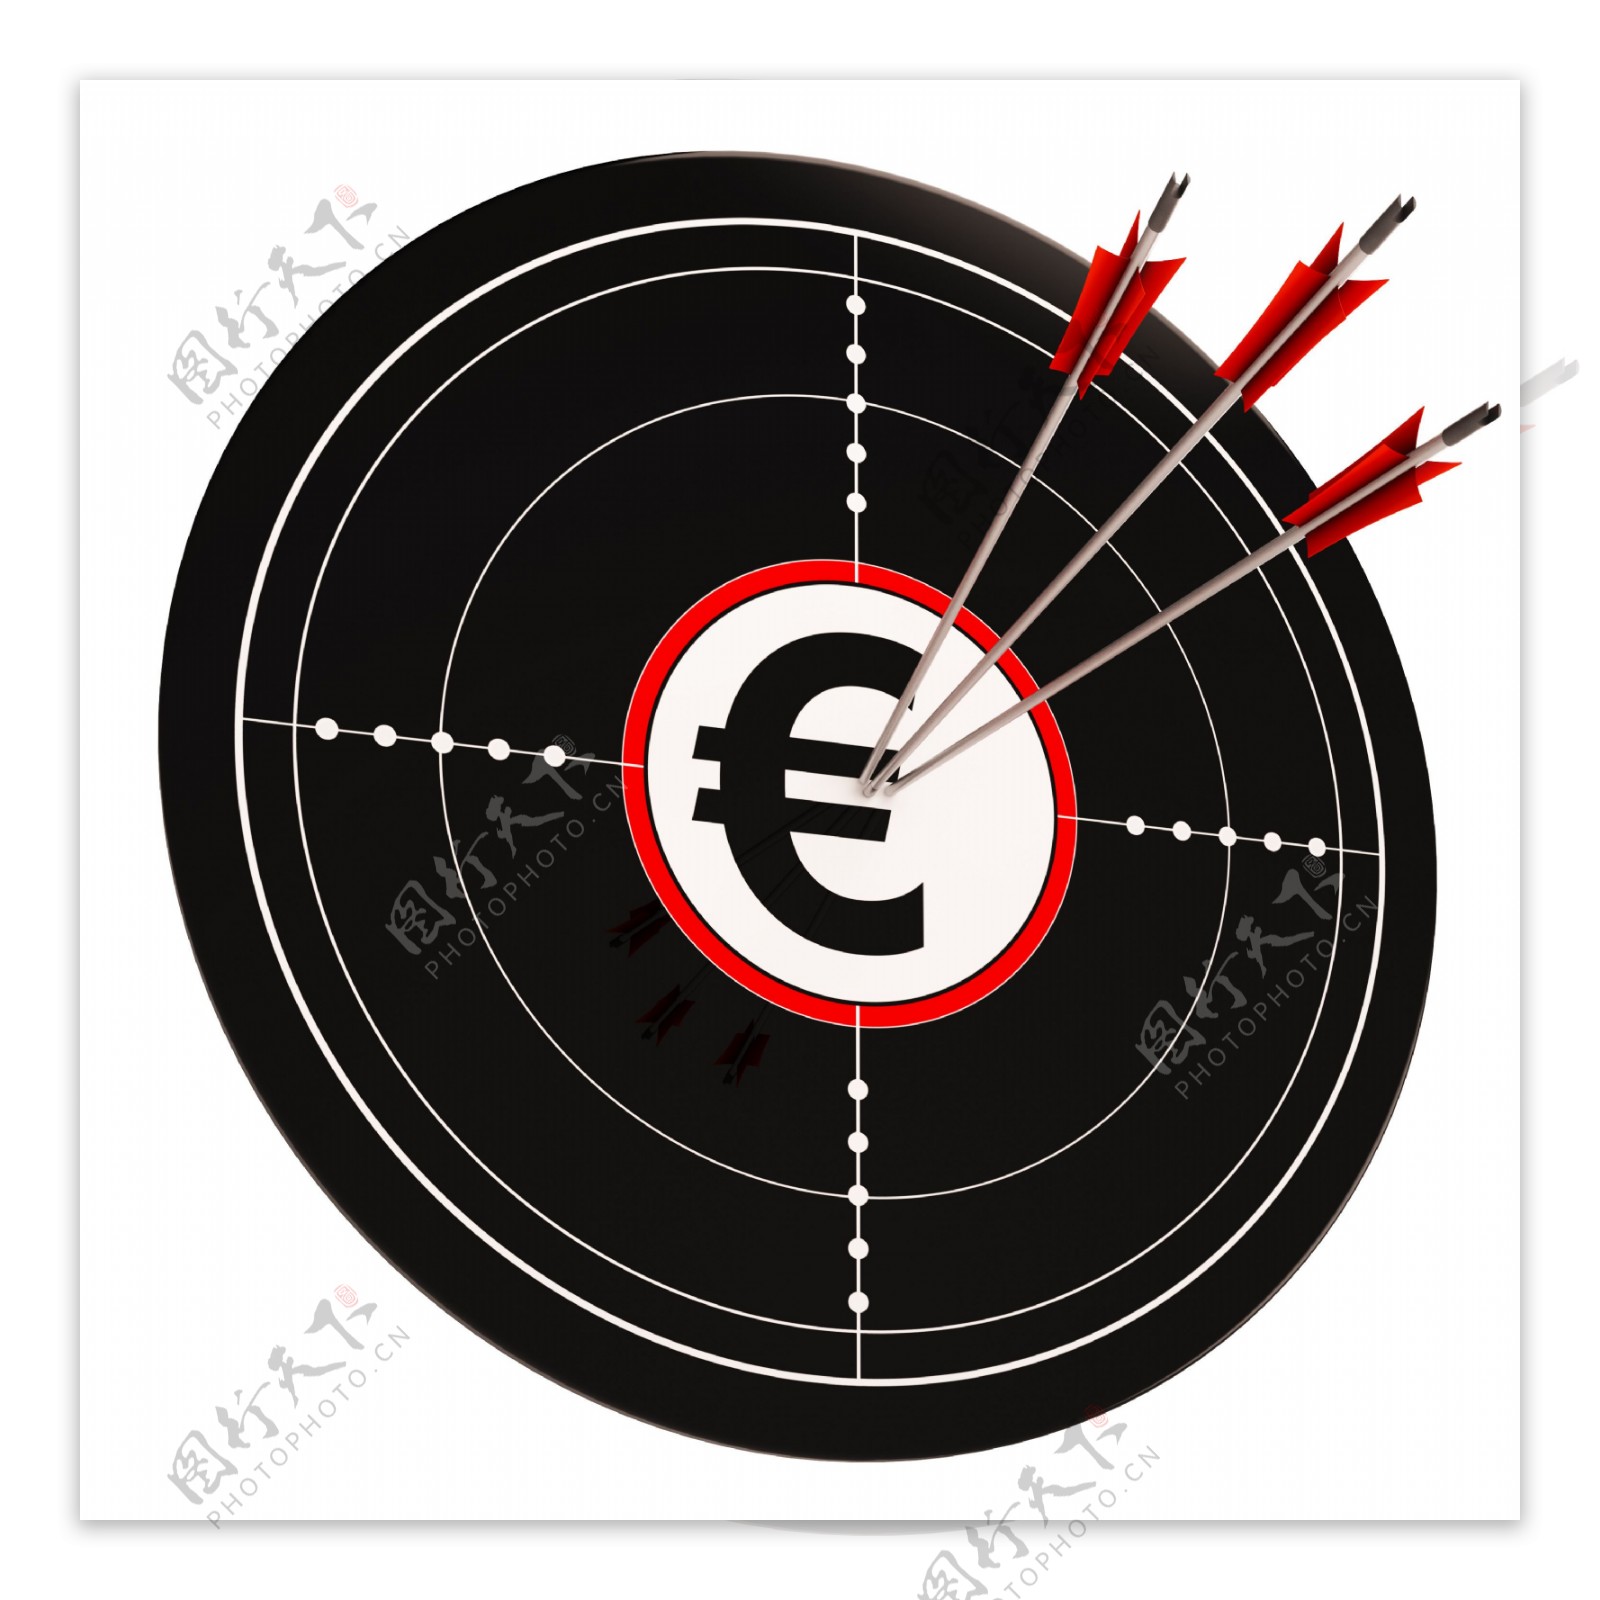 欧元货币目标显示财富和繁荣